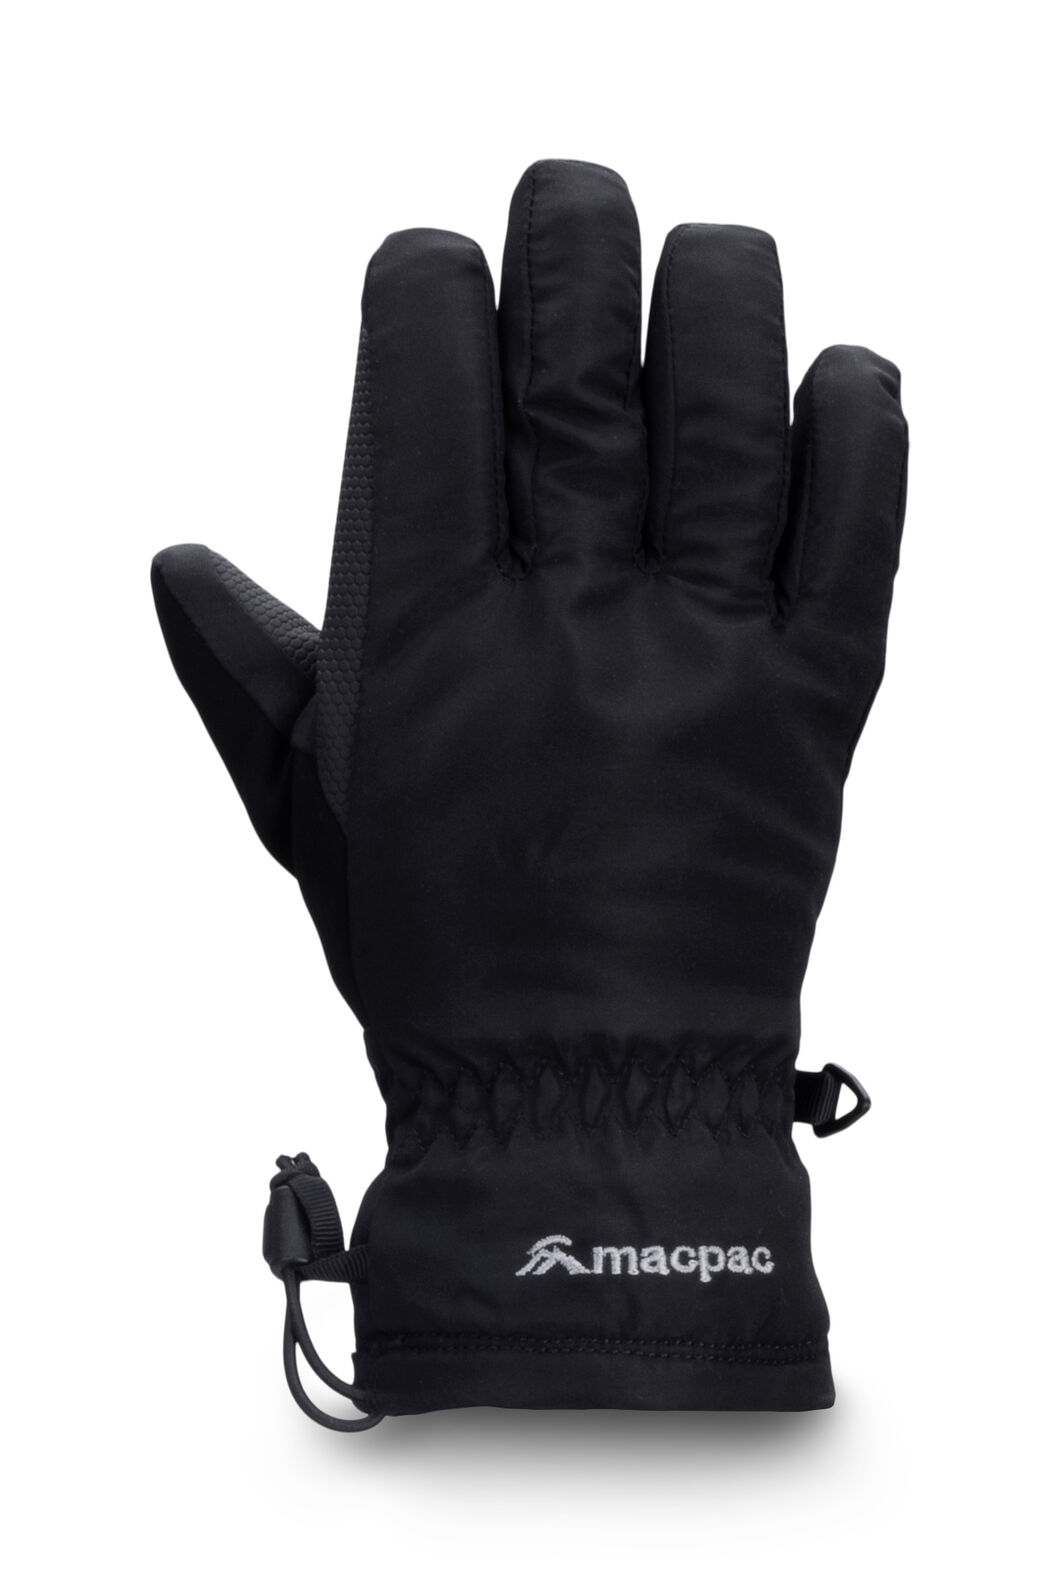 Macpac Kids' Spree Snow Gloves, Black, hi-res